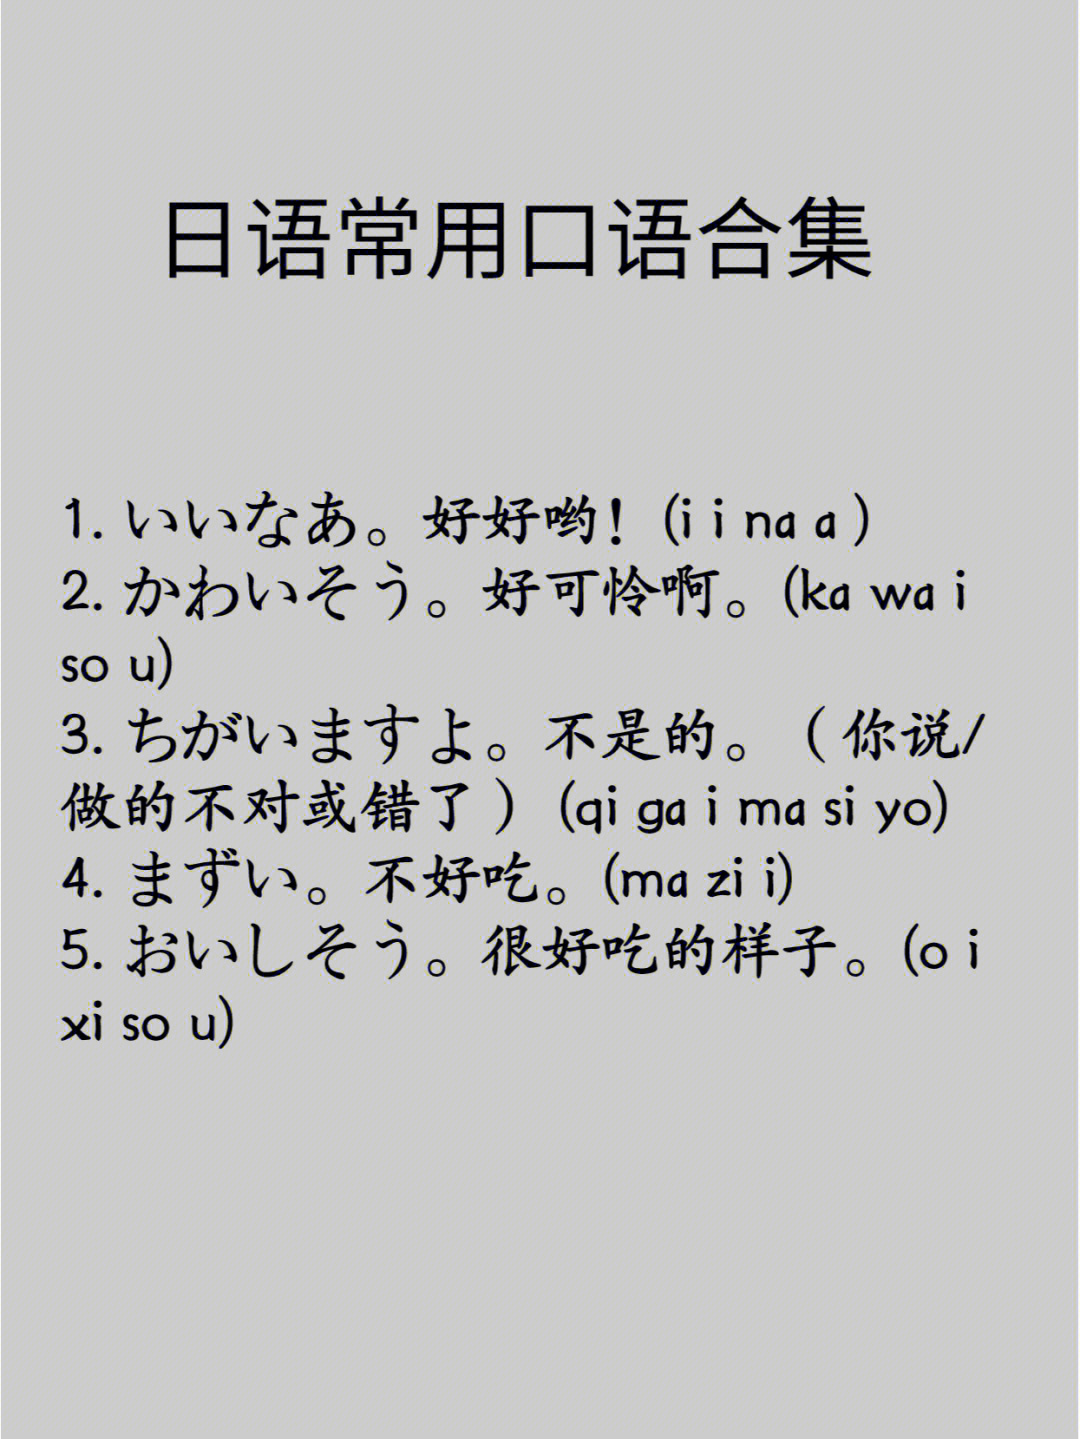 简单的日语日常用语图片